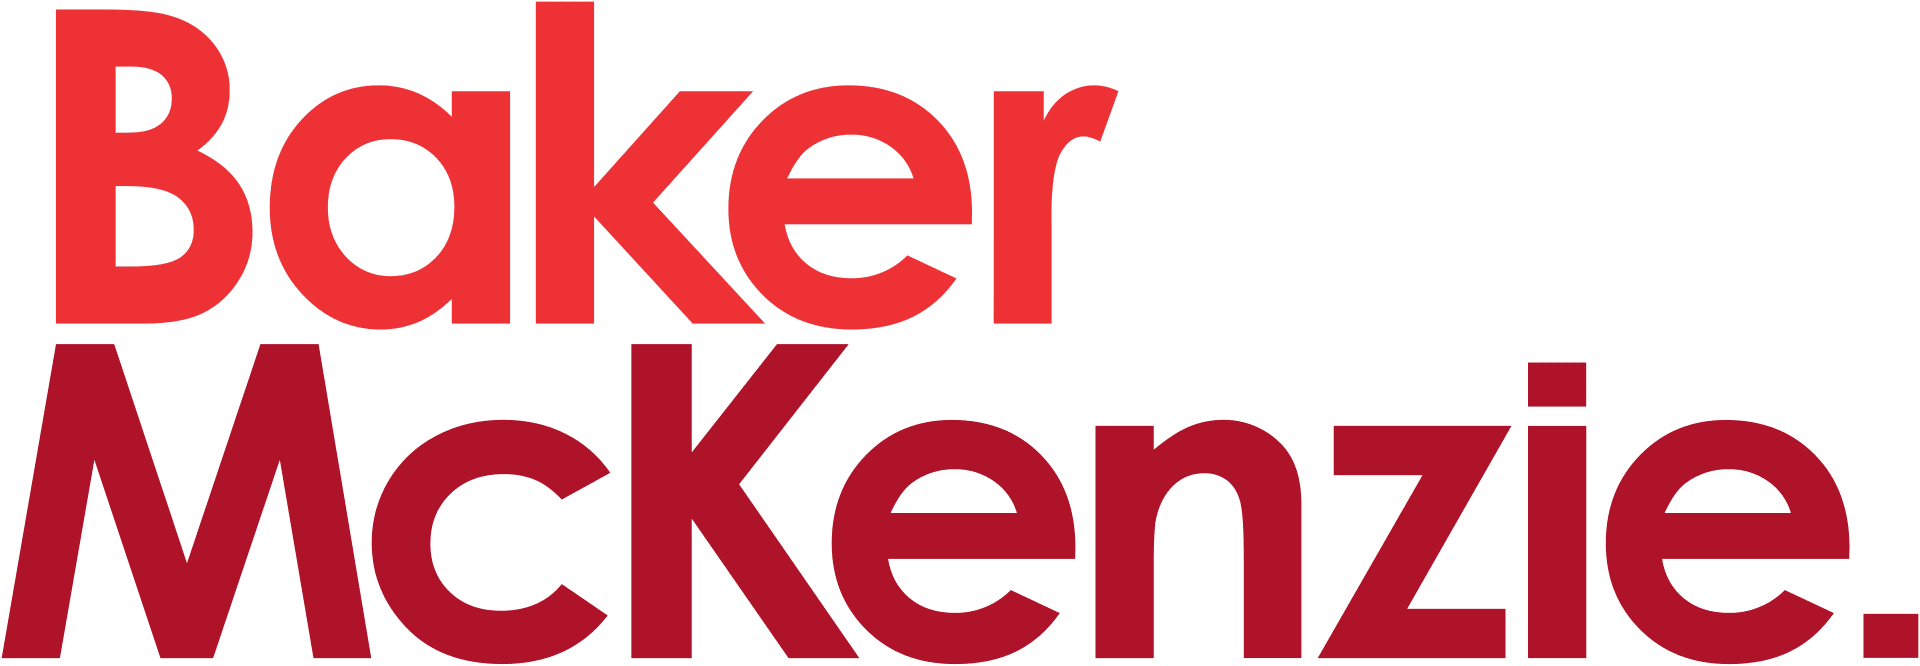 logo Baker &McKenzie